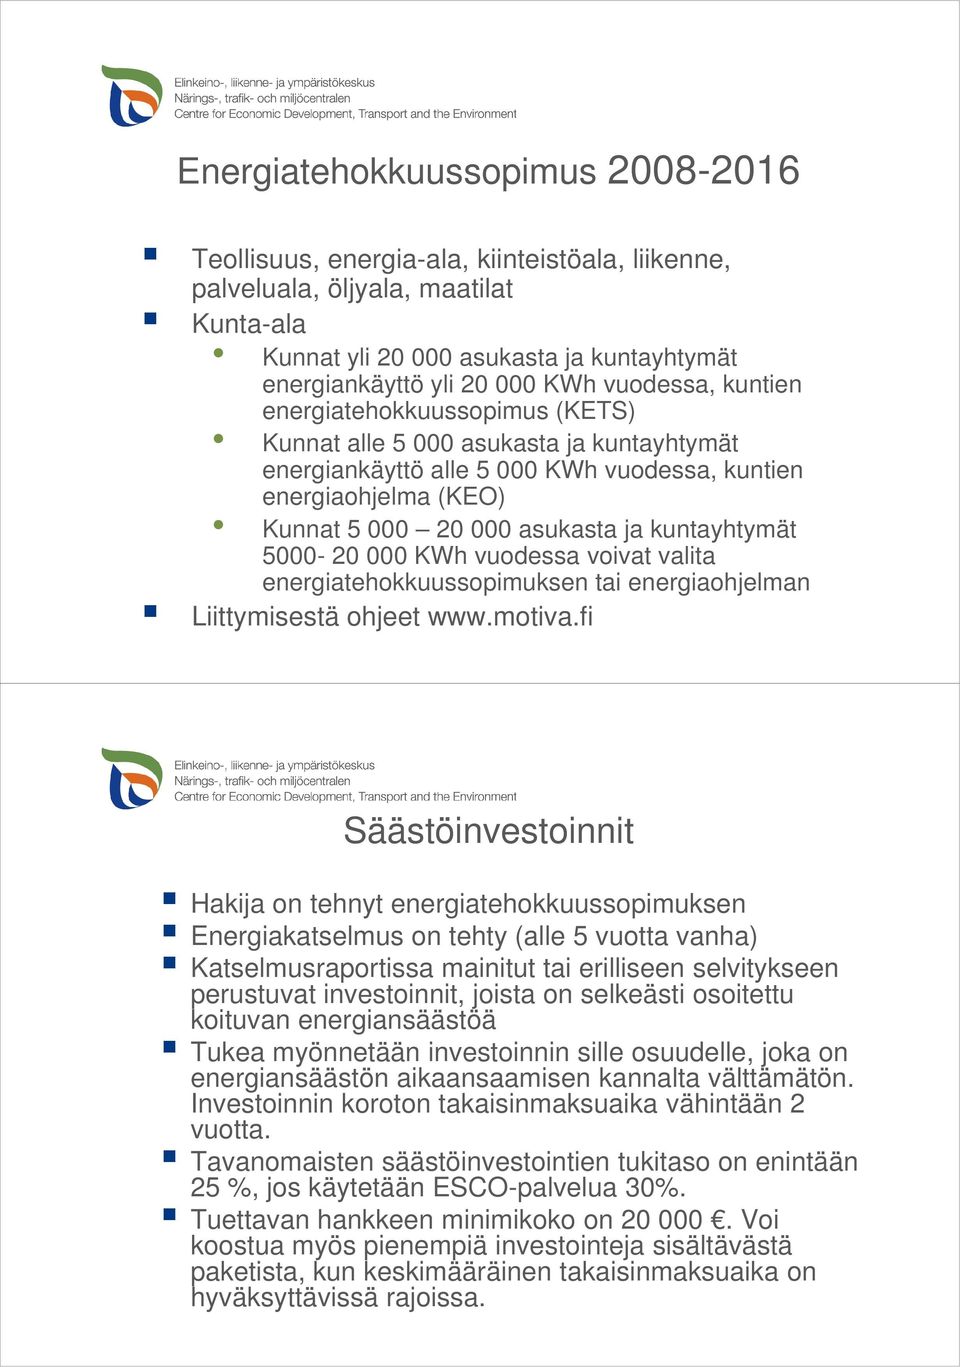 kuntayhtymät 5000-20 000 KWh vuodessa voivat valita energiatehokkuussopimuksen tai energiaohjelman Liittymisestä ohjeet www.motiva.